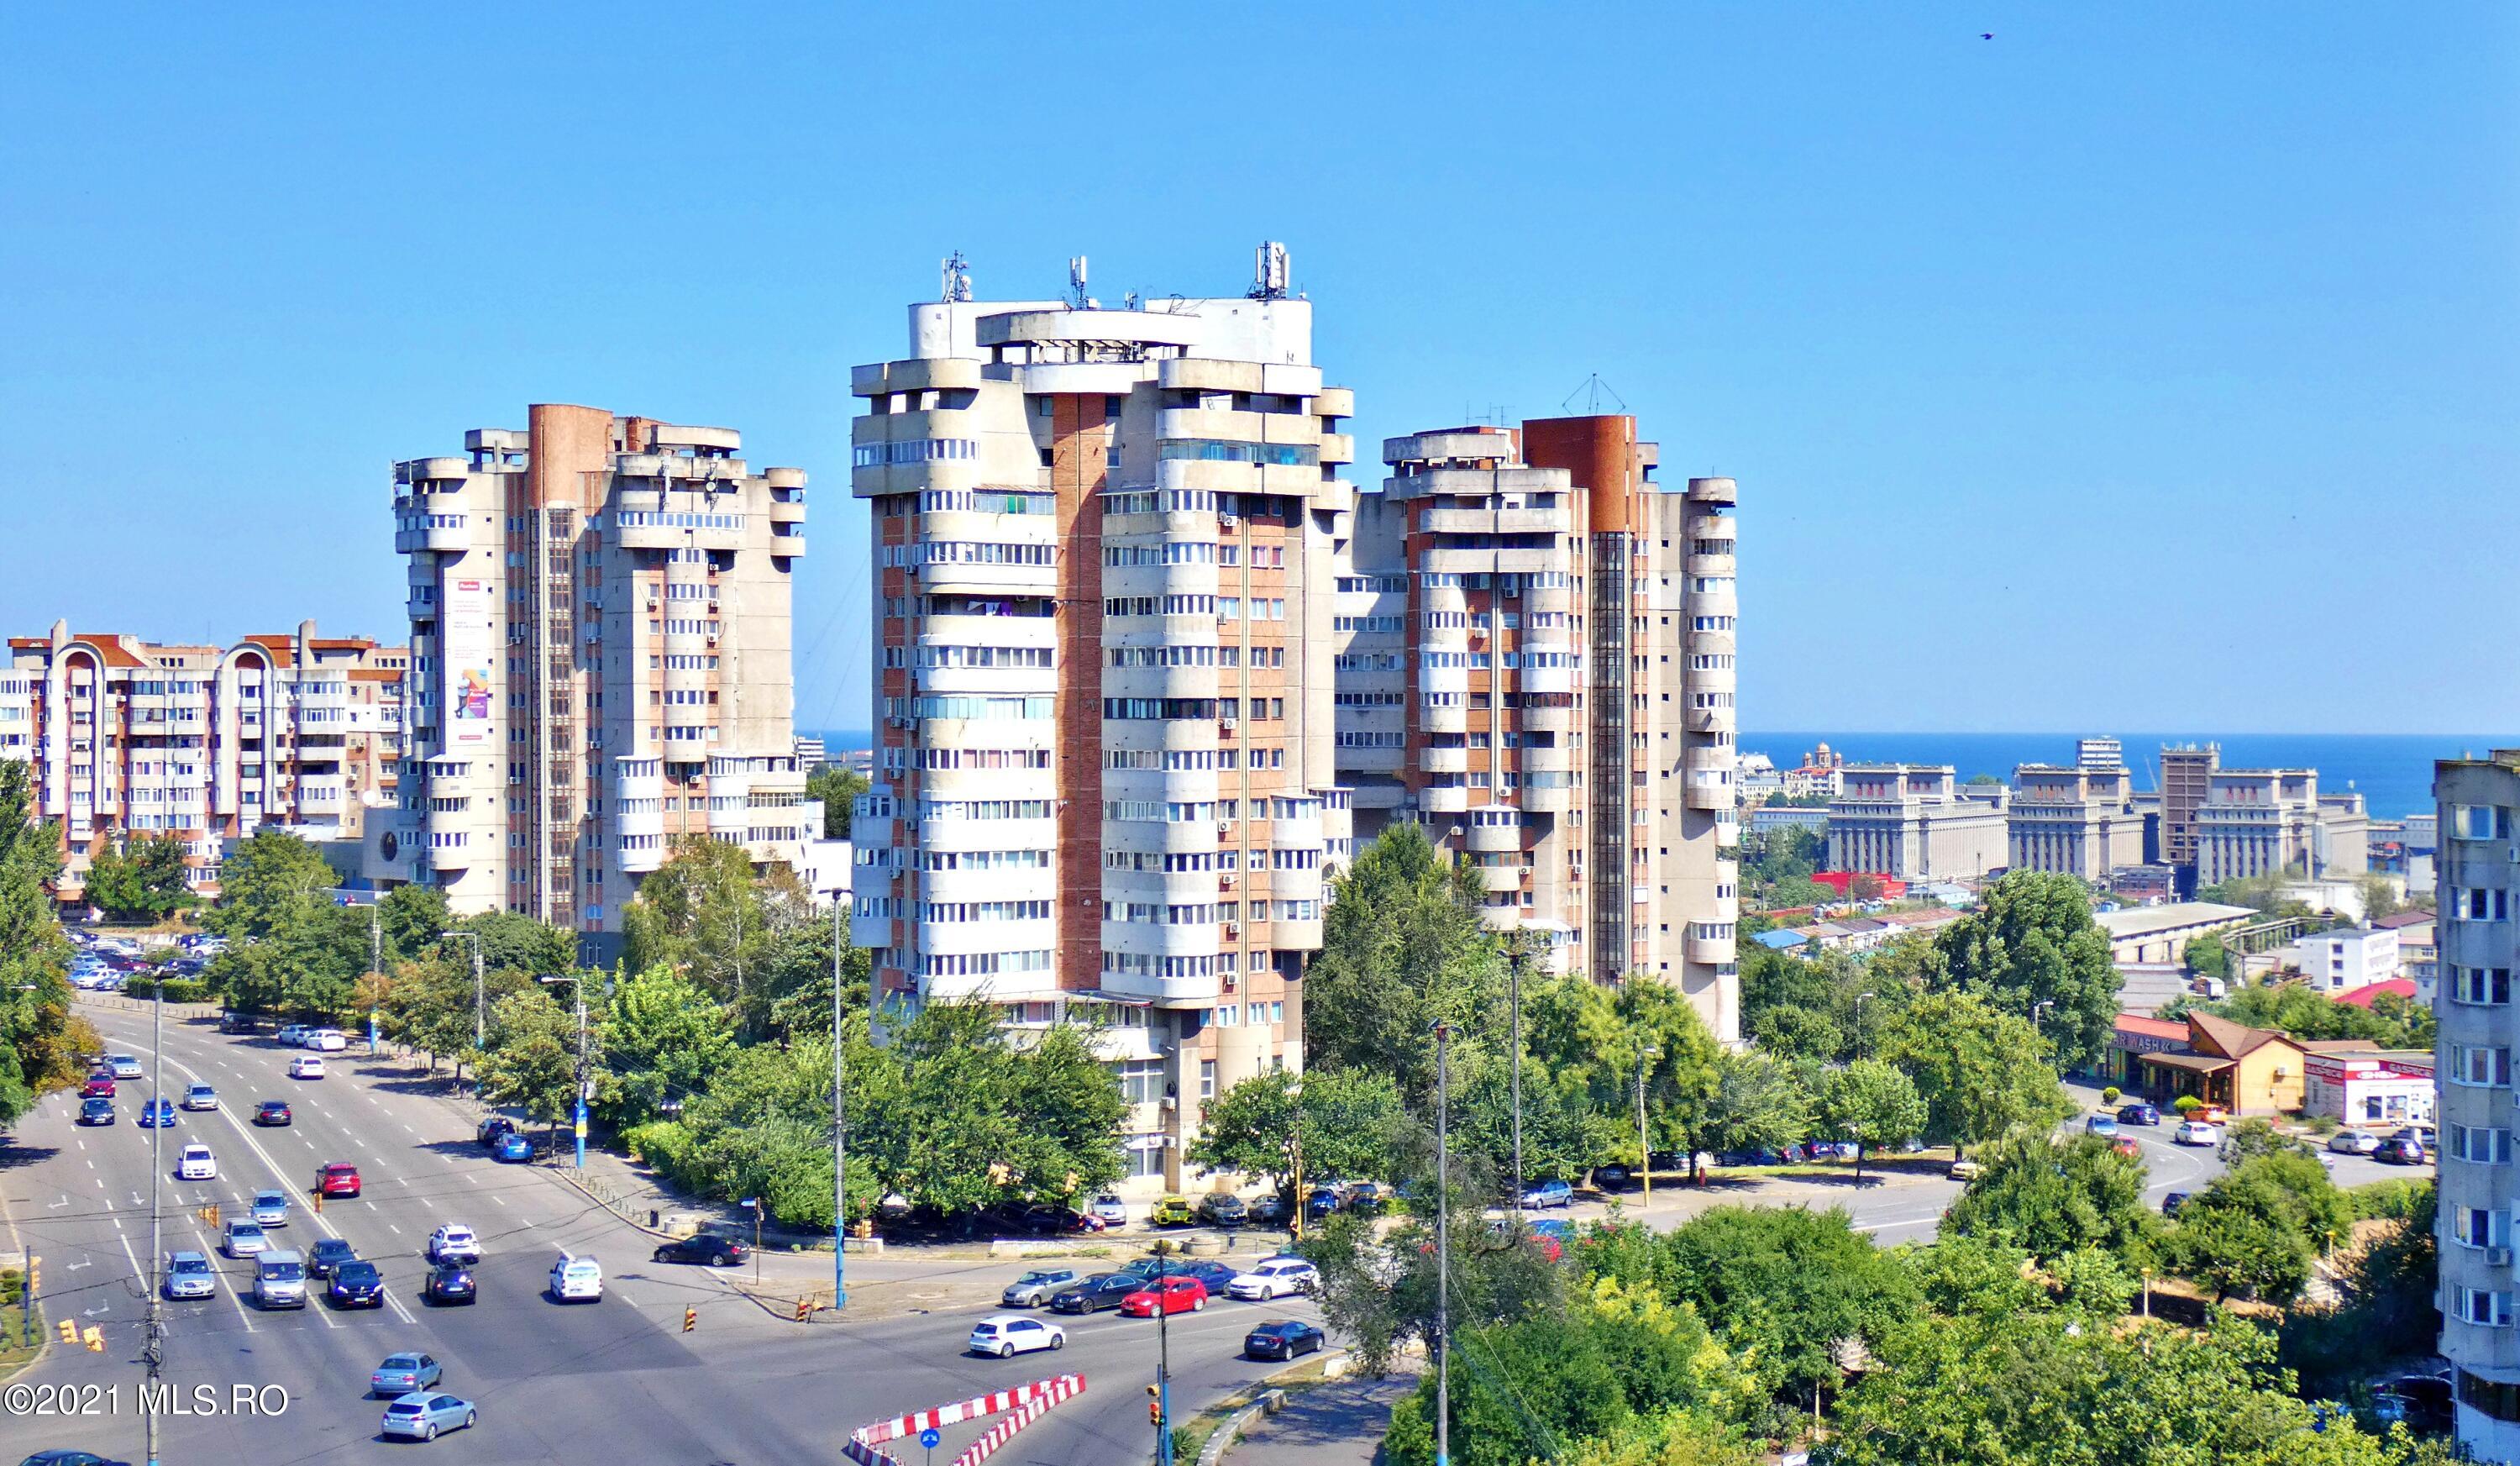                                             Vanzare -                                                                                     Apartament 3 camere                                                                                 - Gara Constanta
                                        